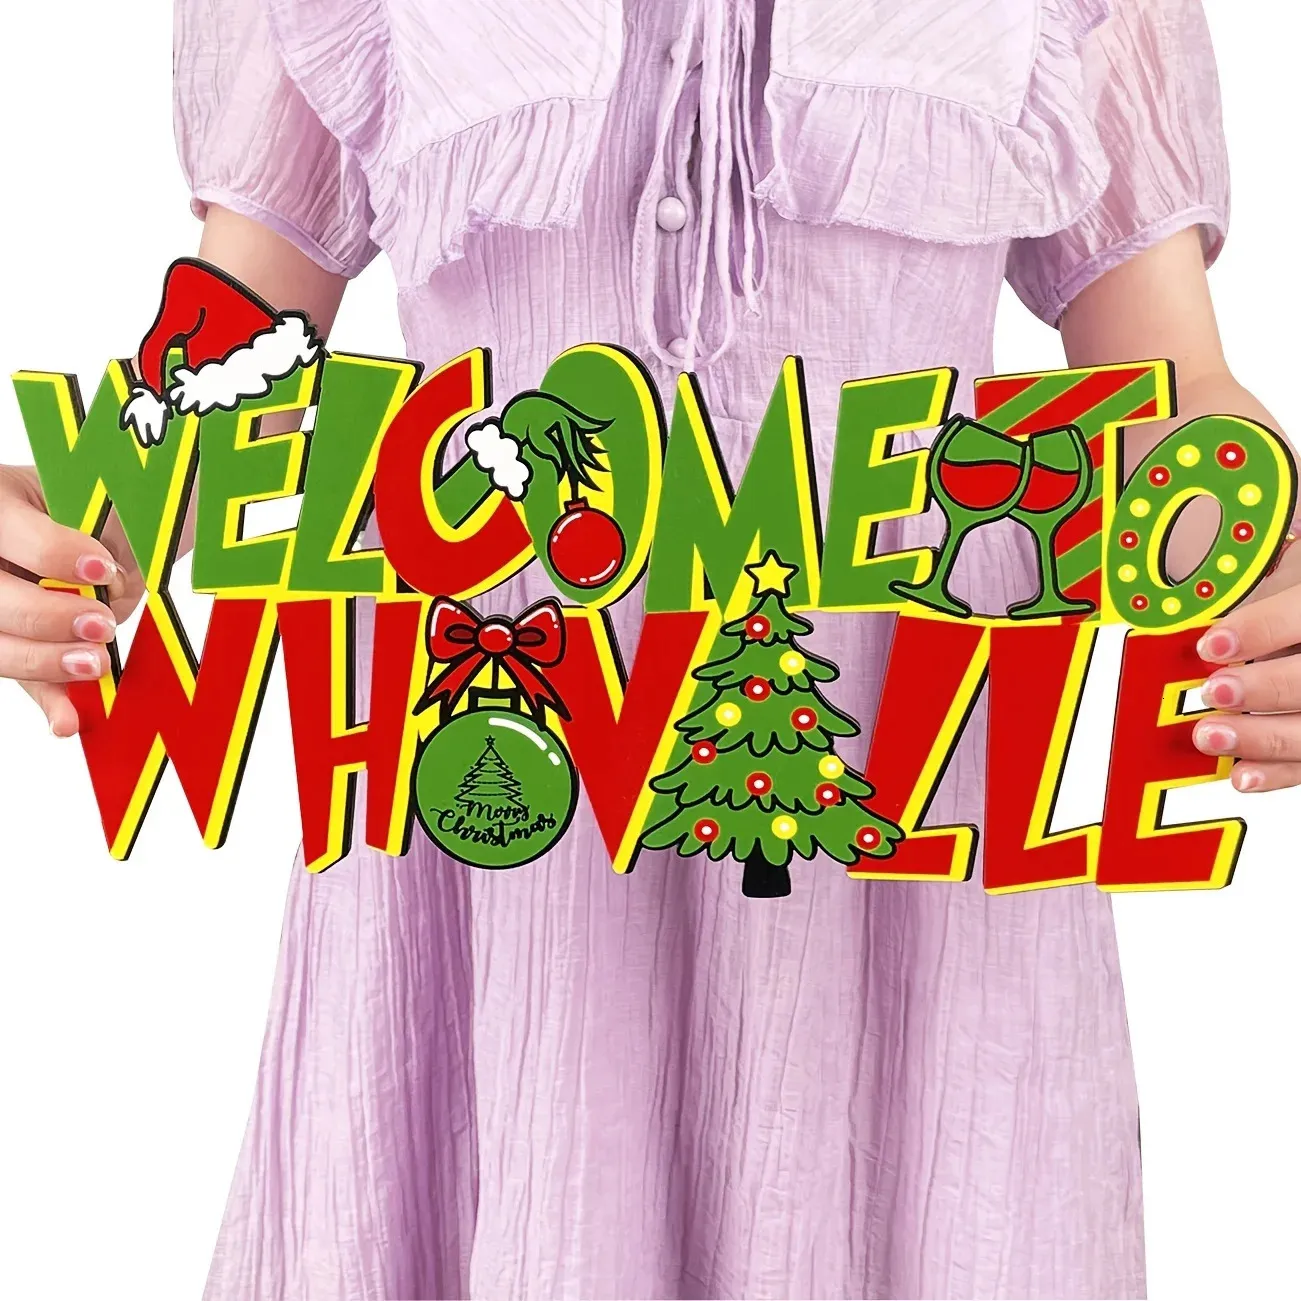 Inne imprezowe zapasy imprezowe whoville świąteczne dekoracje